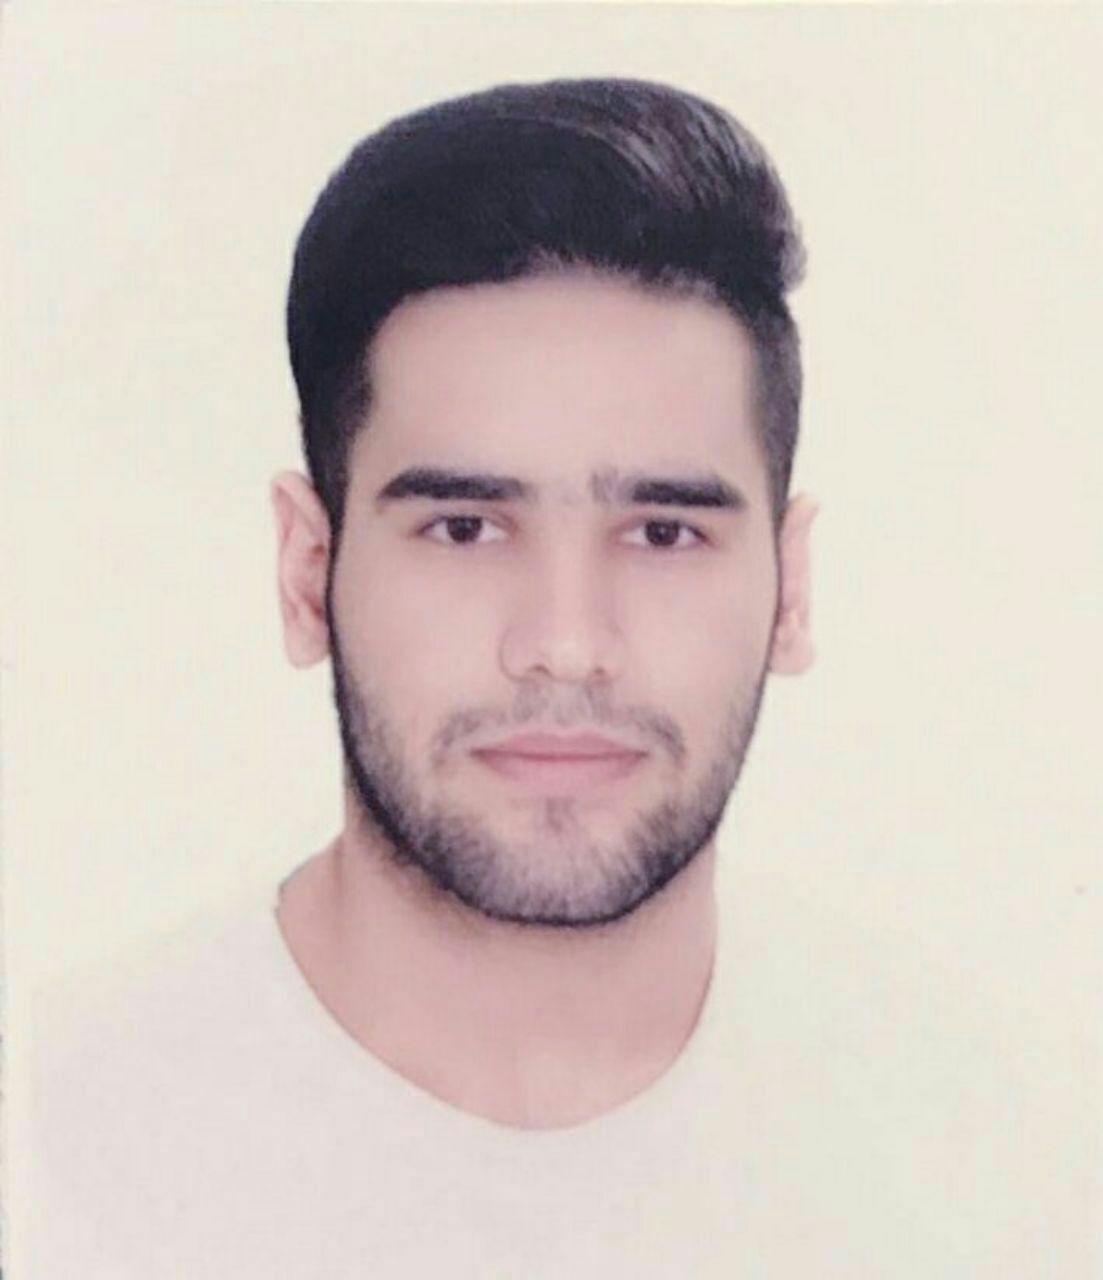  فوت دانشجوی دانشگاه علوم پزشکی مازندران در استخر